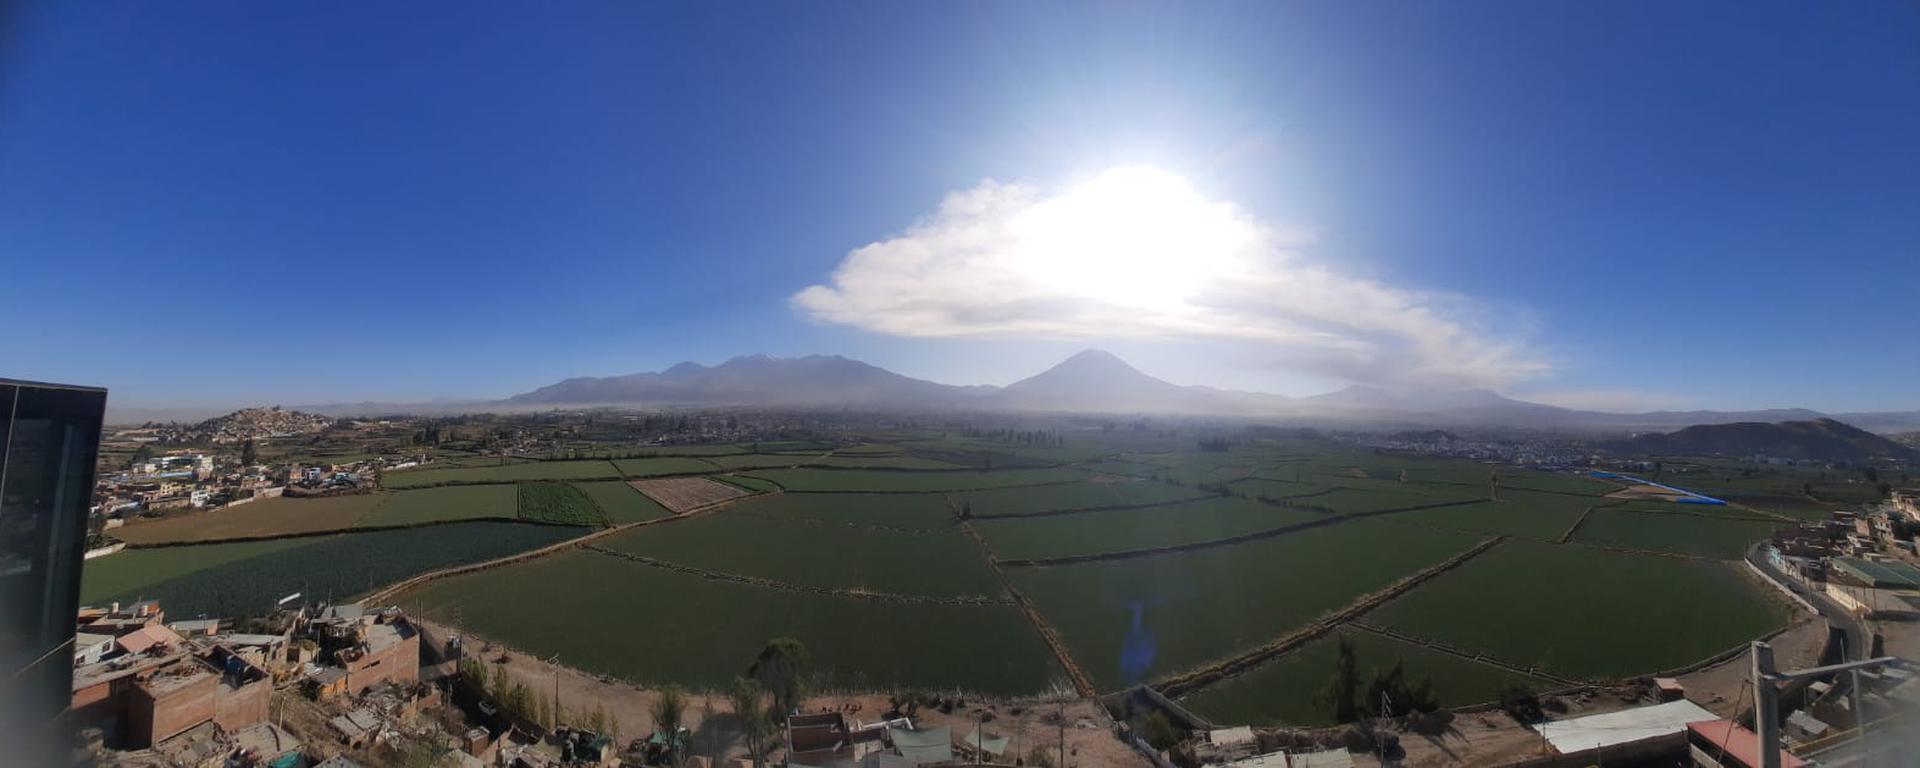 Volcán Ubinas: Nueva explosión y cenizas afectan a localidades de Arequipa